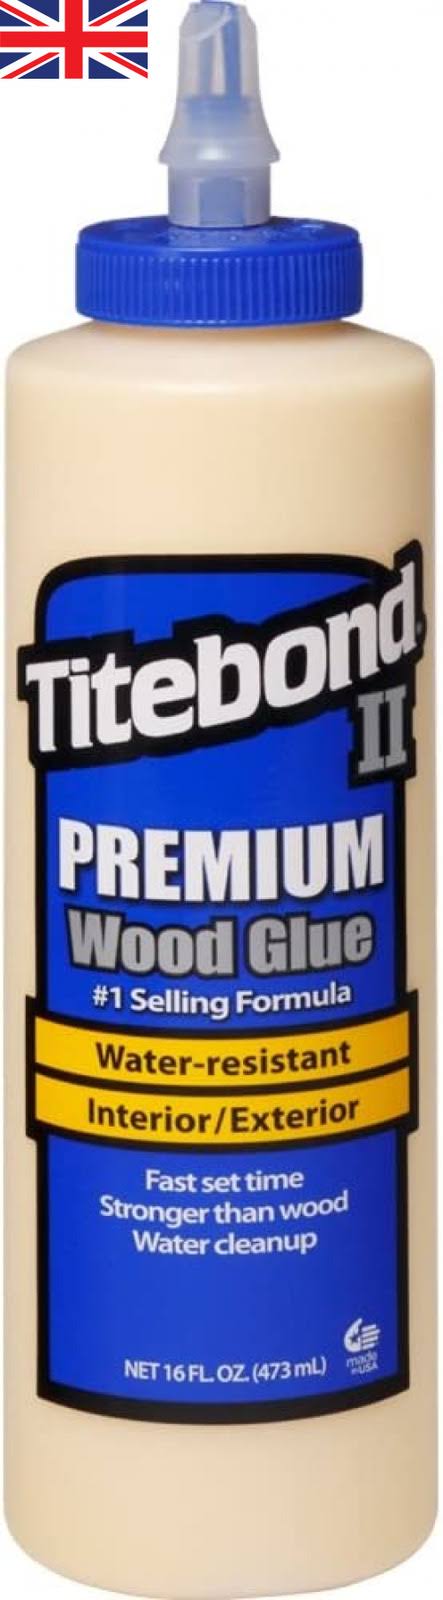 Weatherproof Titebond II Pemium Wood Glue